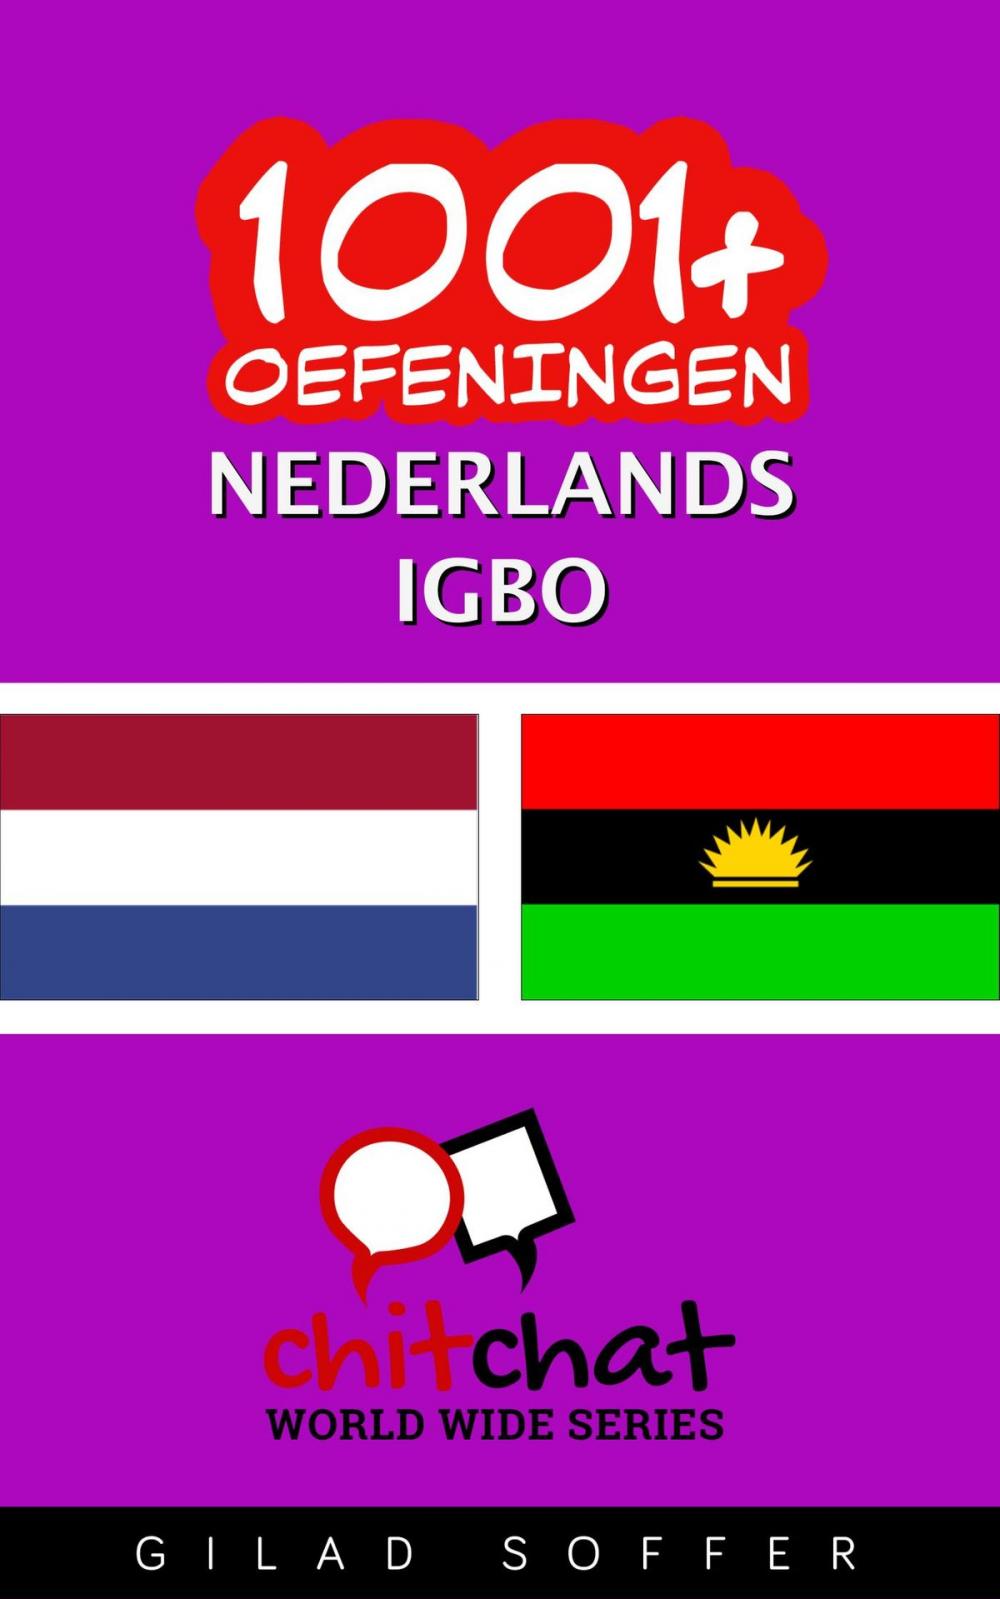 Big bigCover of 1001+ oefeningen nederlands - igbo